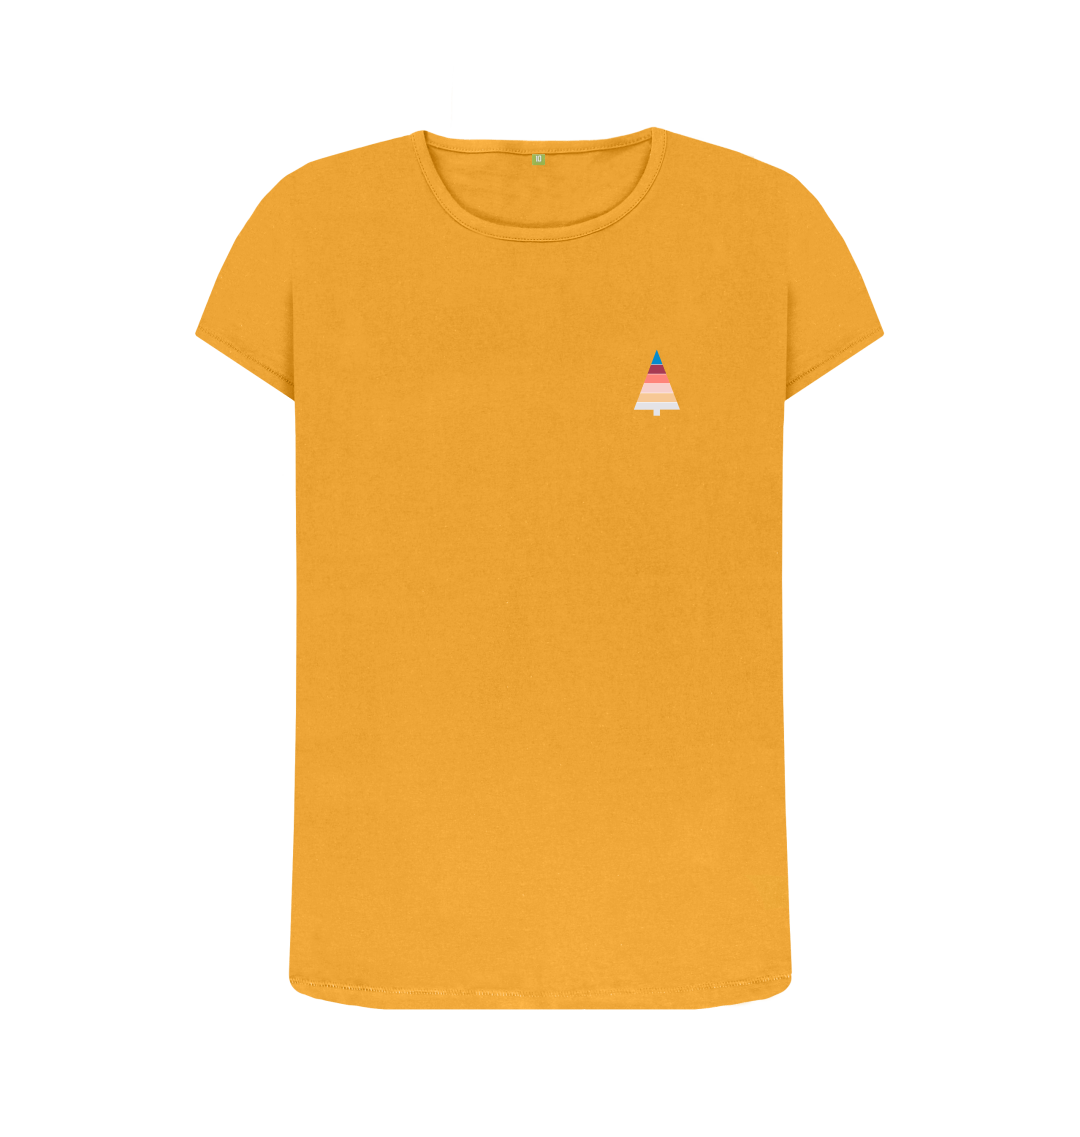 Women's The Shining inspired 'Keyhole Maze' T-Shirt